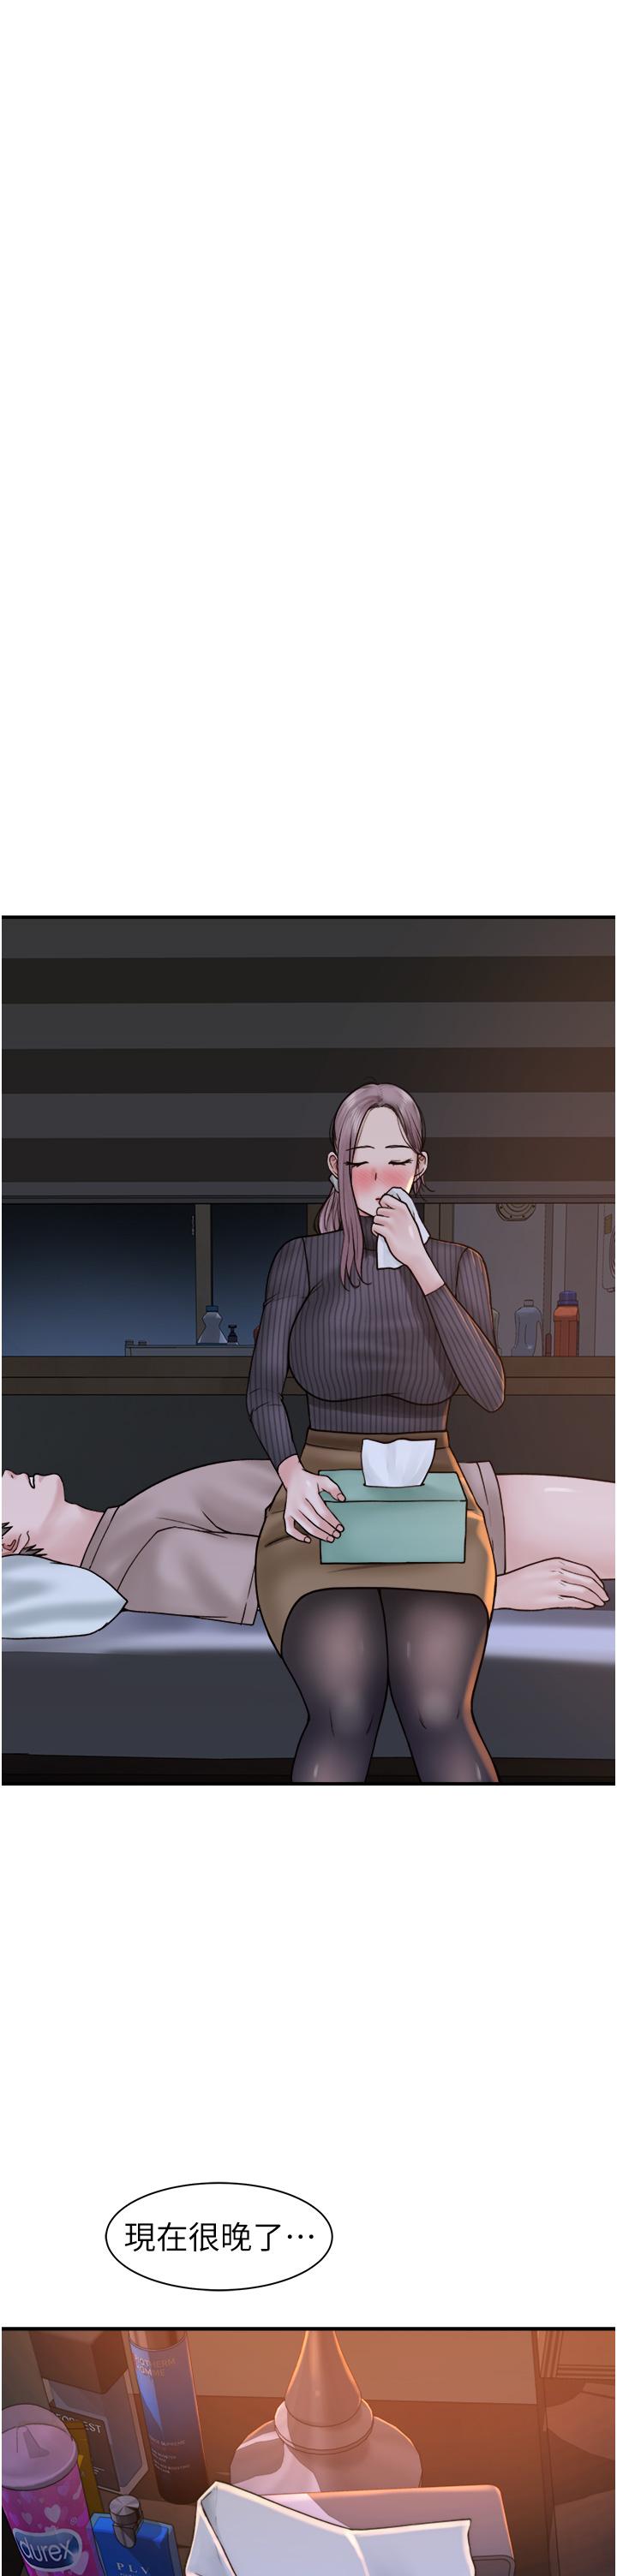 韩国污漫画 繼母的香味 第23话-伸进蜜穴的手指 40